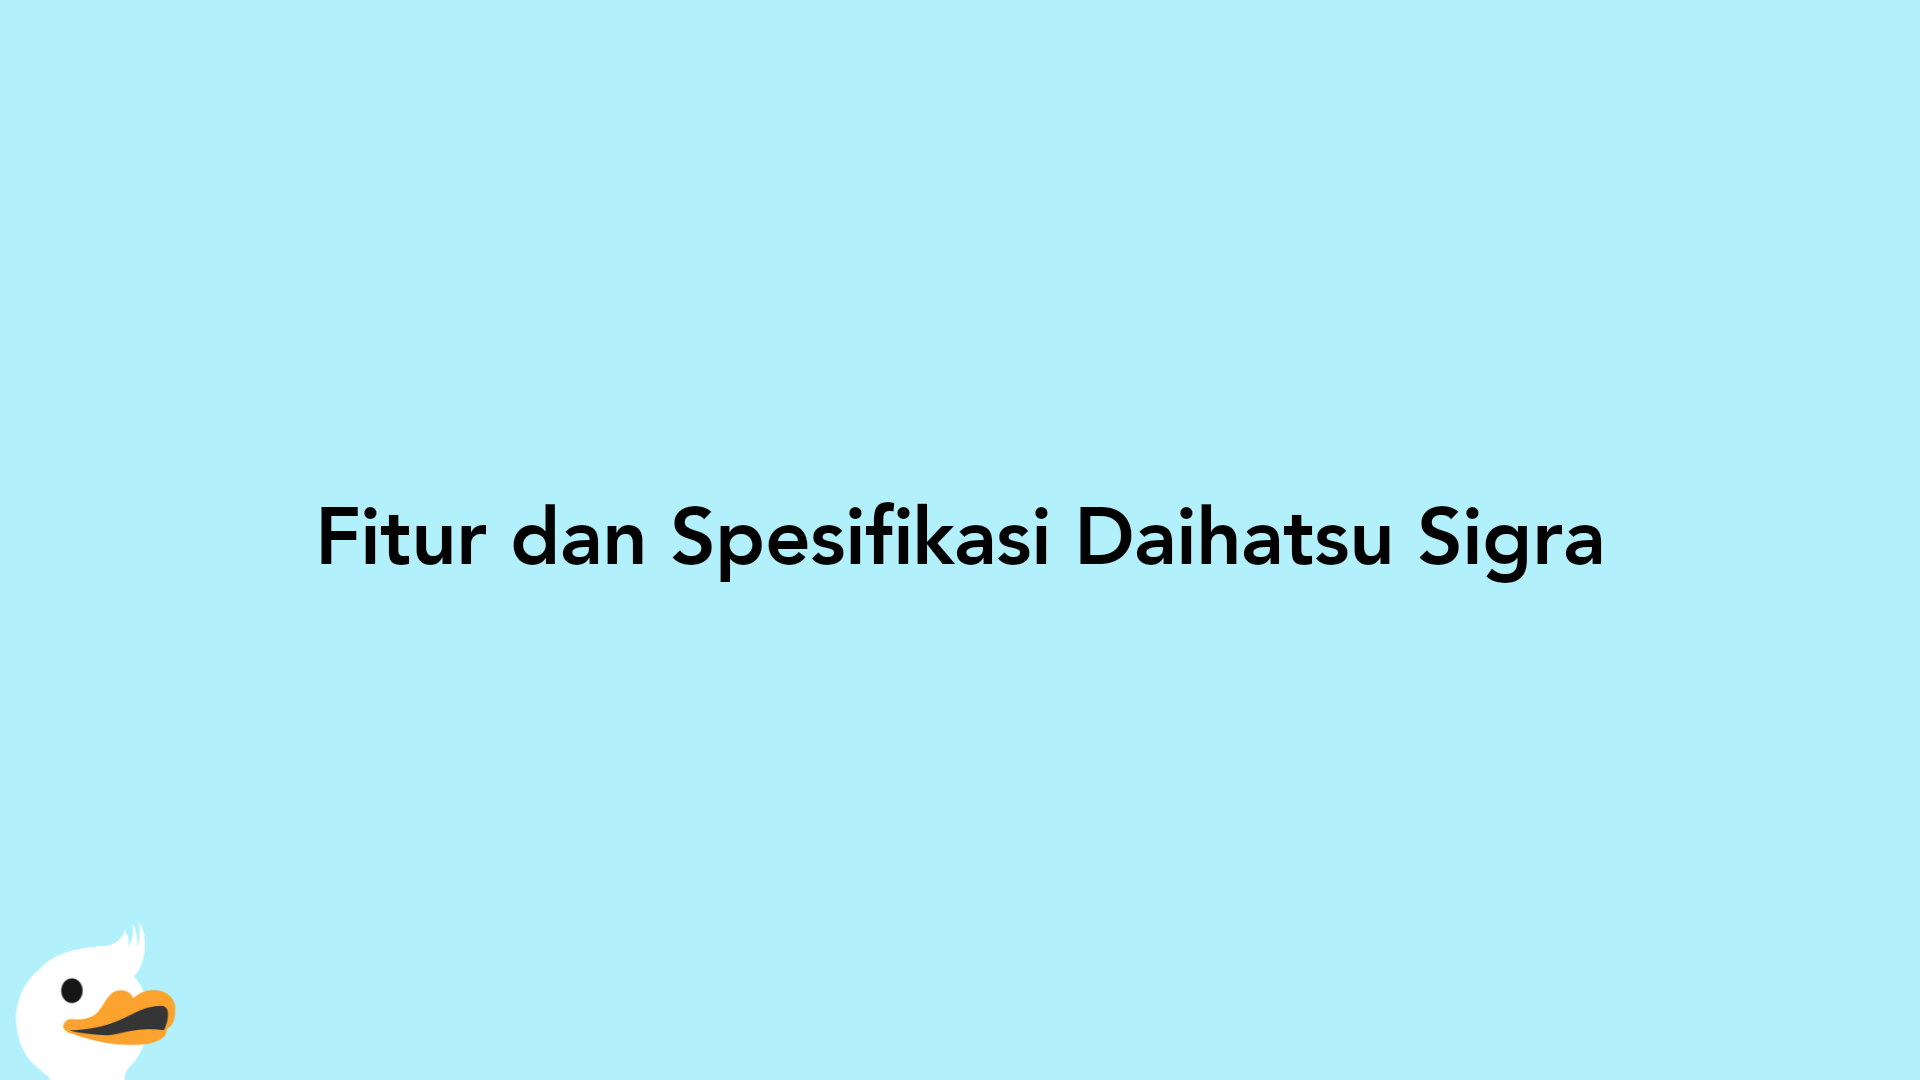 Fitur dan Spesifikasi Daihatsu Sigra